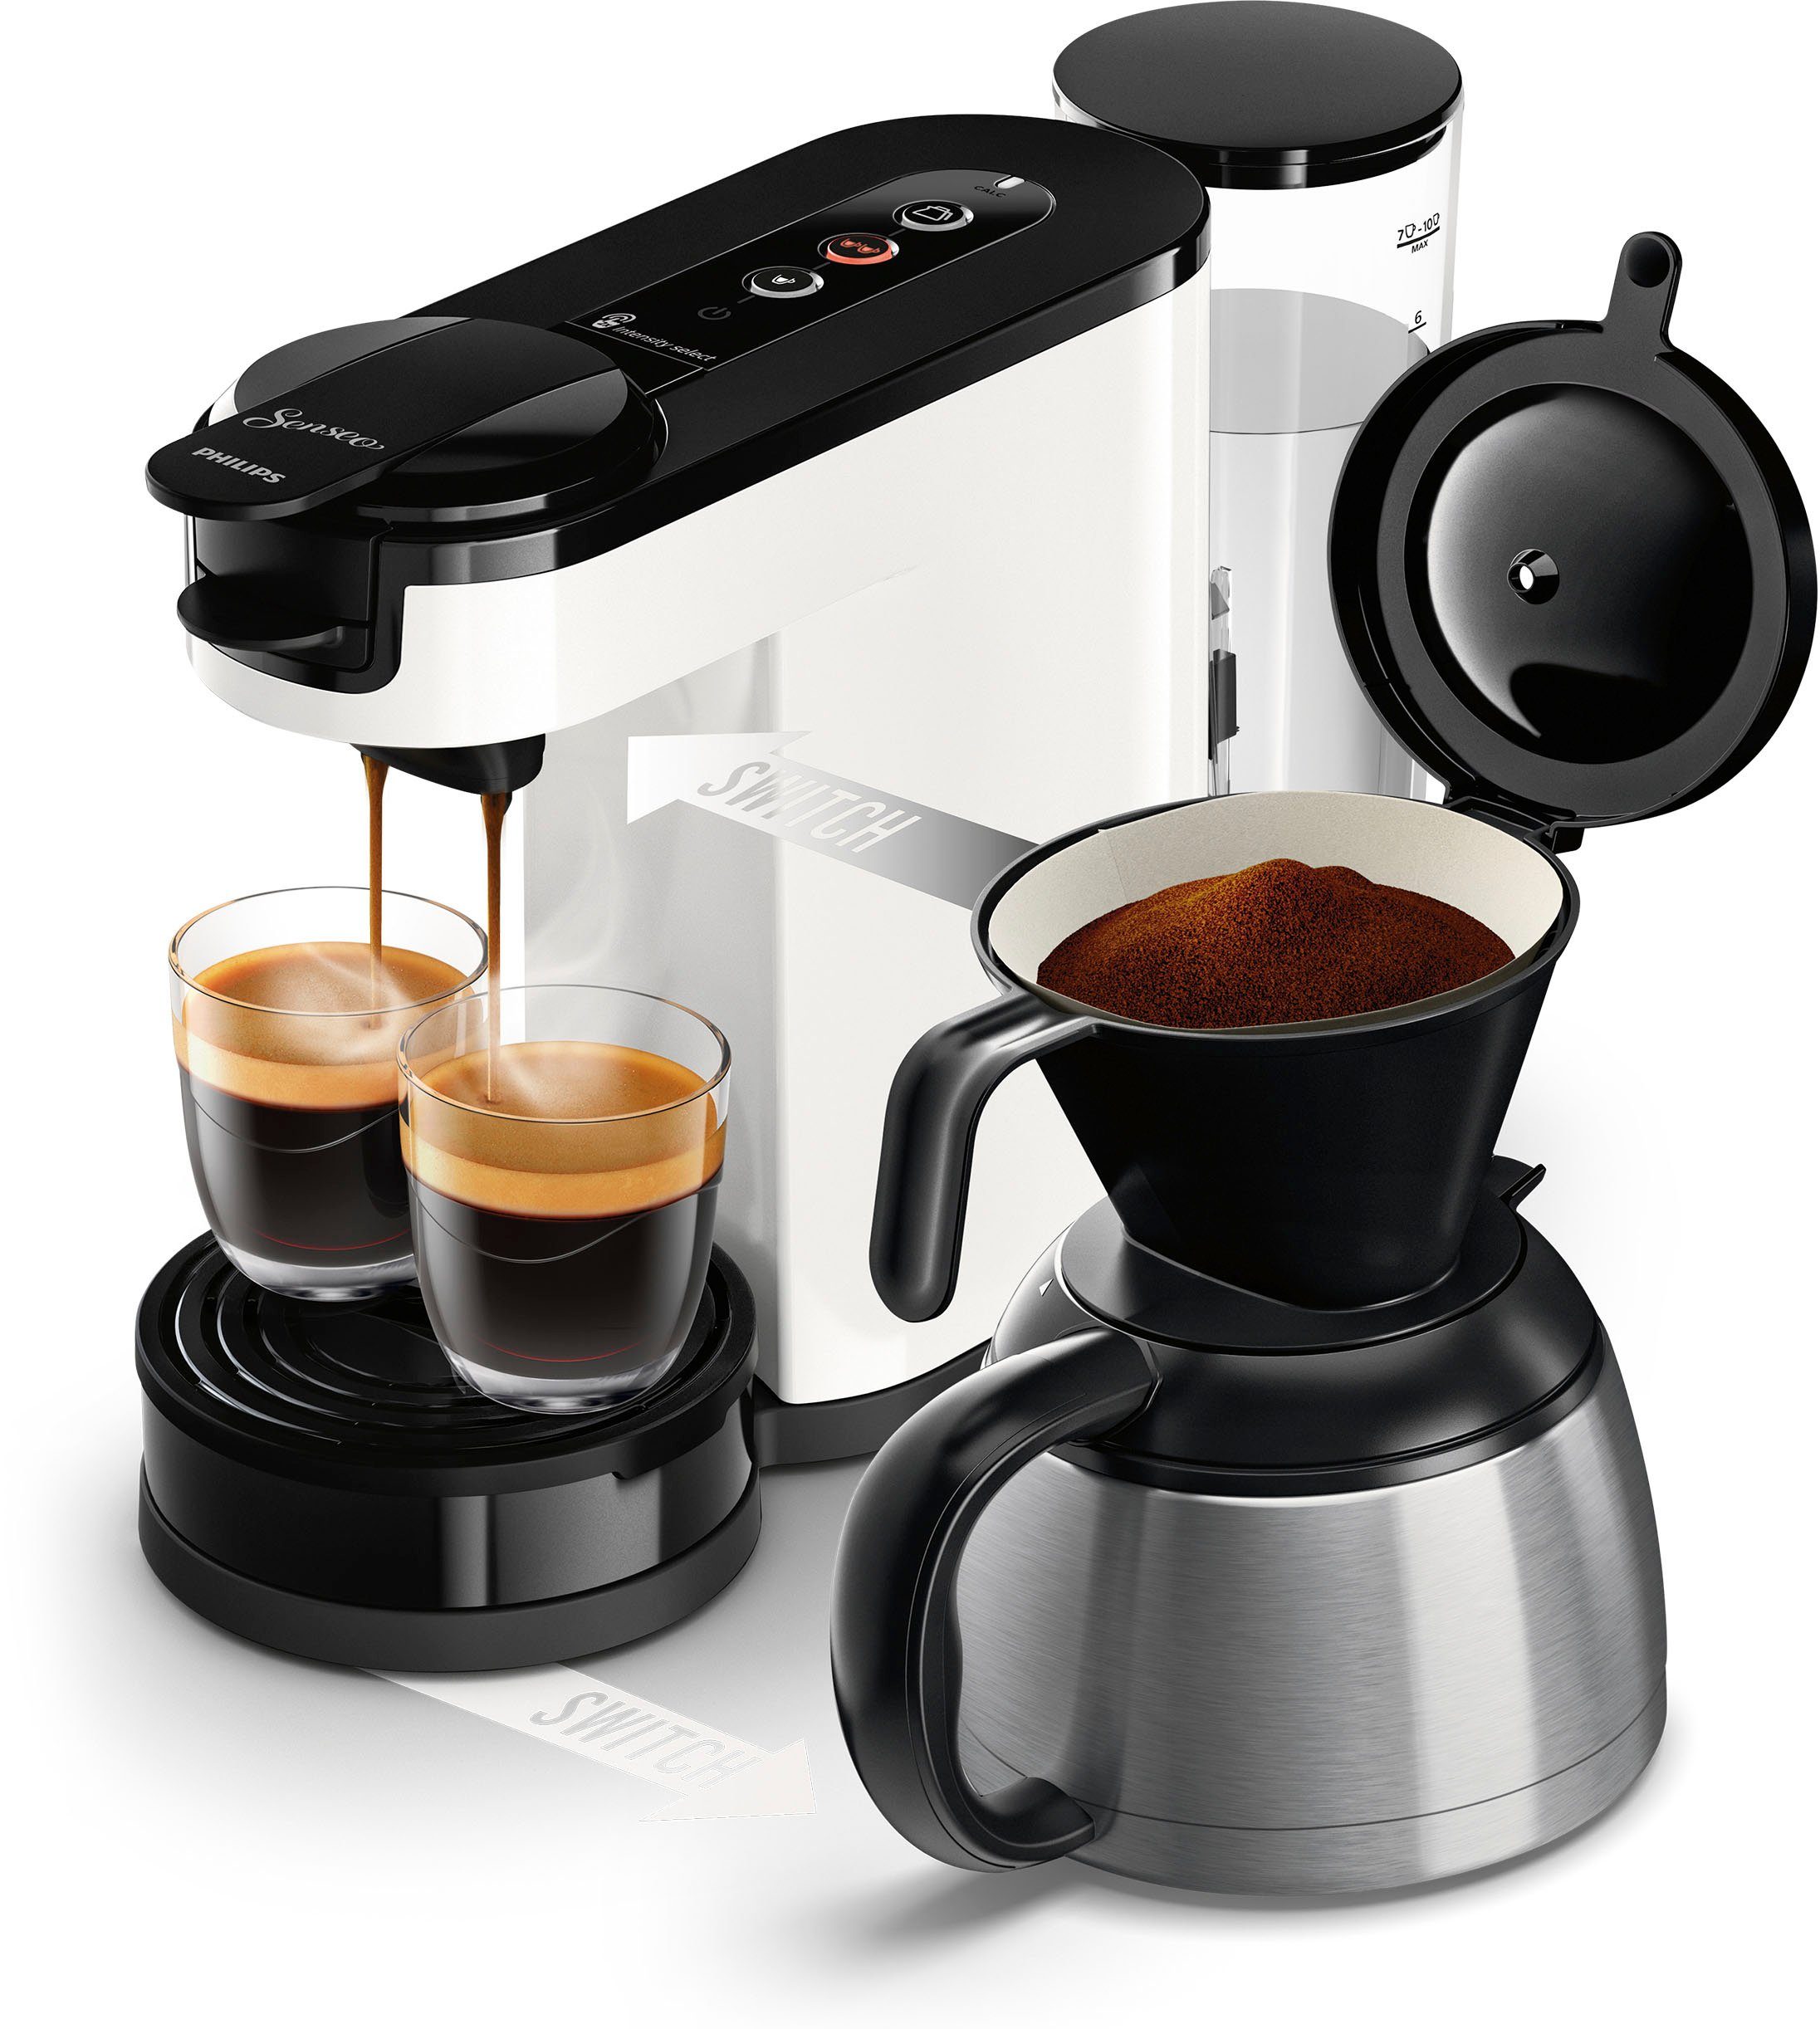 1l im Kaffeekanne, Switch 9,90 € Philips HD6592/04, UVP Kaffeepaddose Wert von Kaffeepadmaschine inkl. Senseo